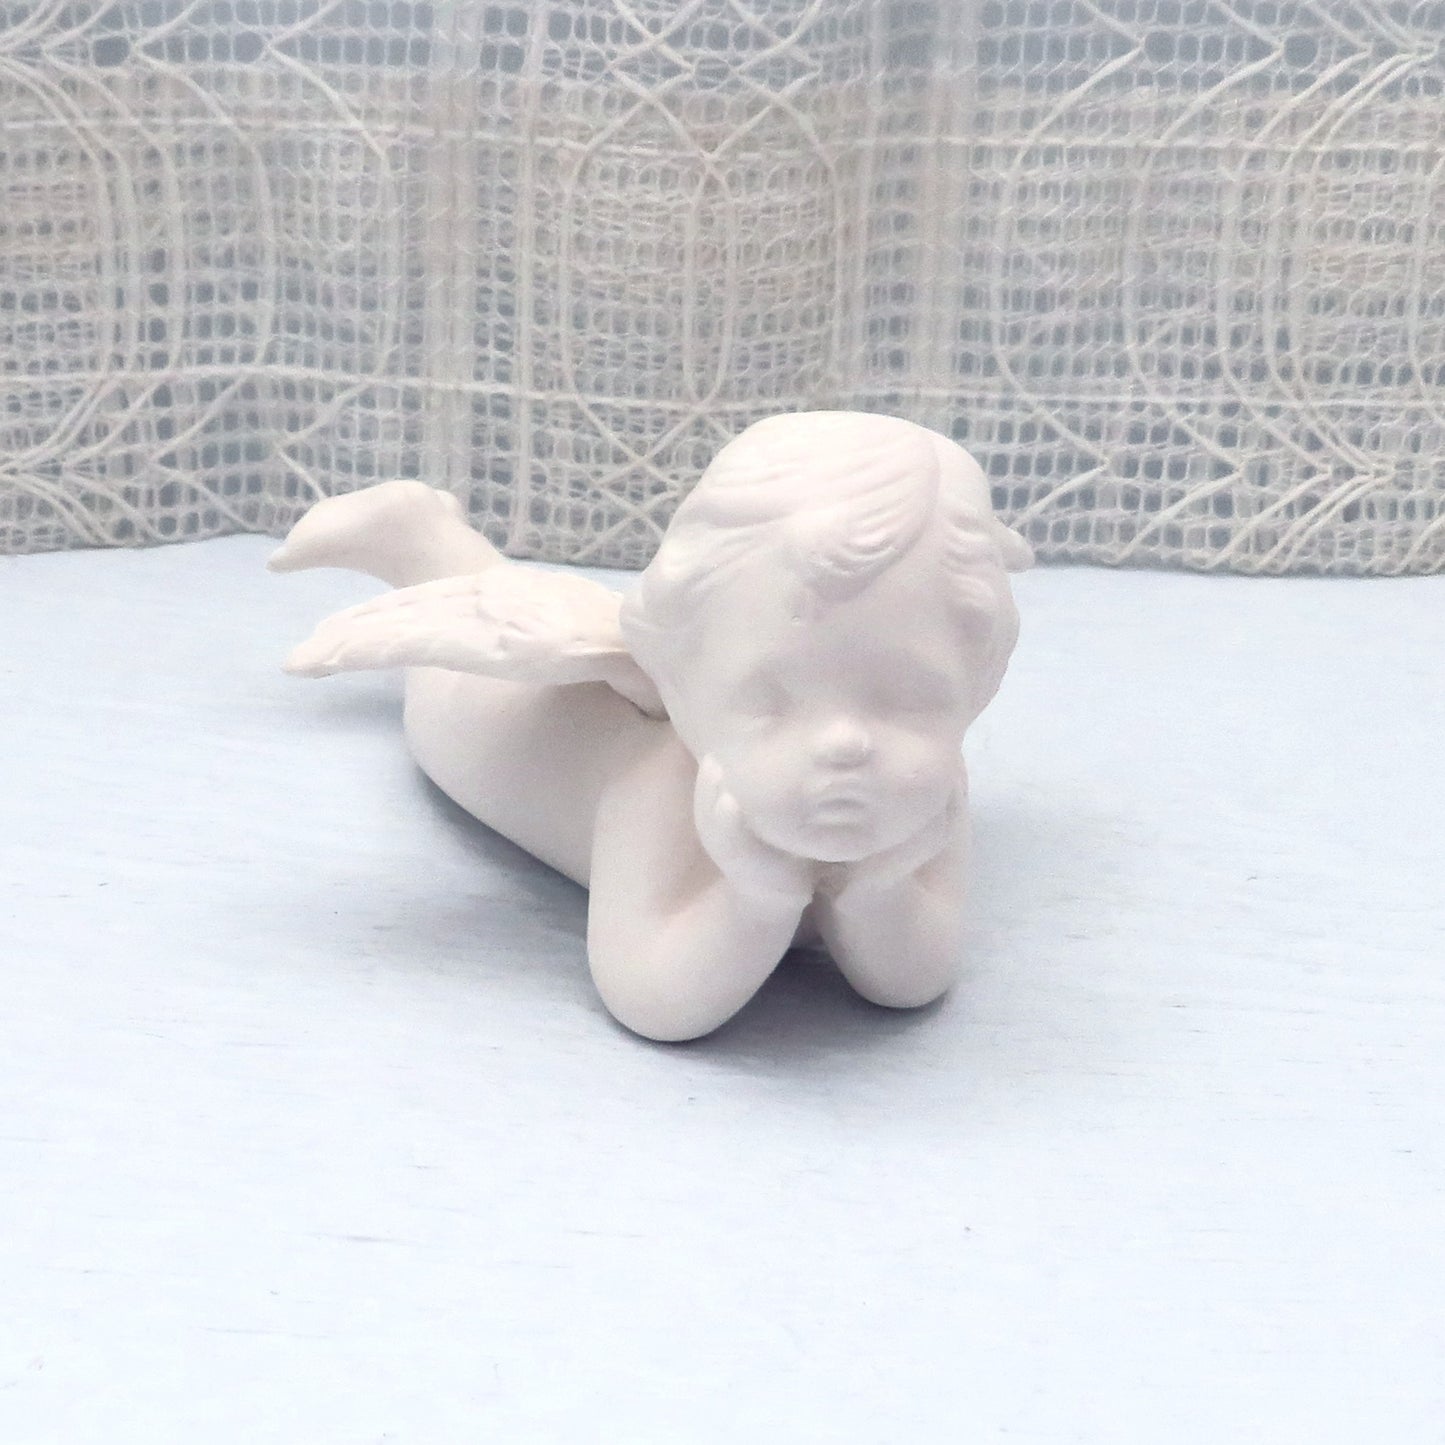 Unpainted Ceramic Angel / Ceramic Bisque / Ready to Paint  / Cherub Angel / Angel Figurine / Ceramic Angel Statue / Ceramics To Paint